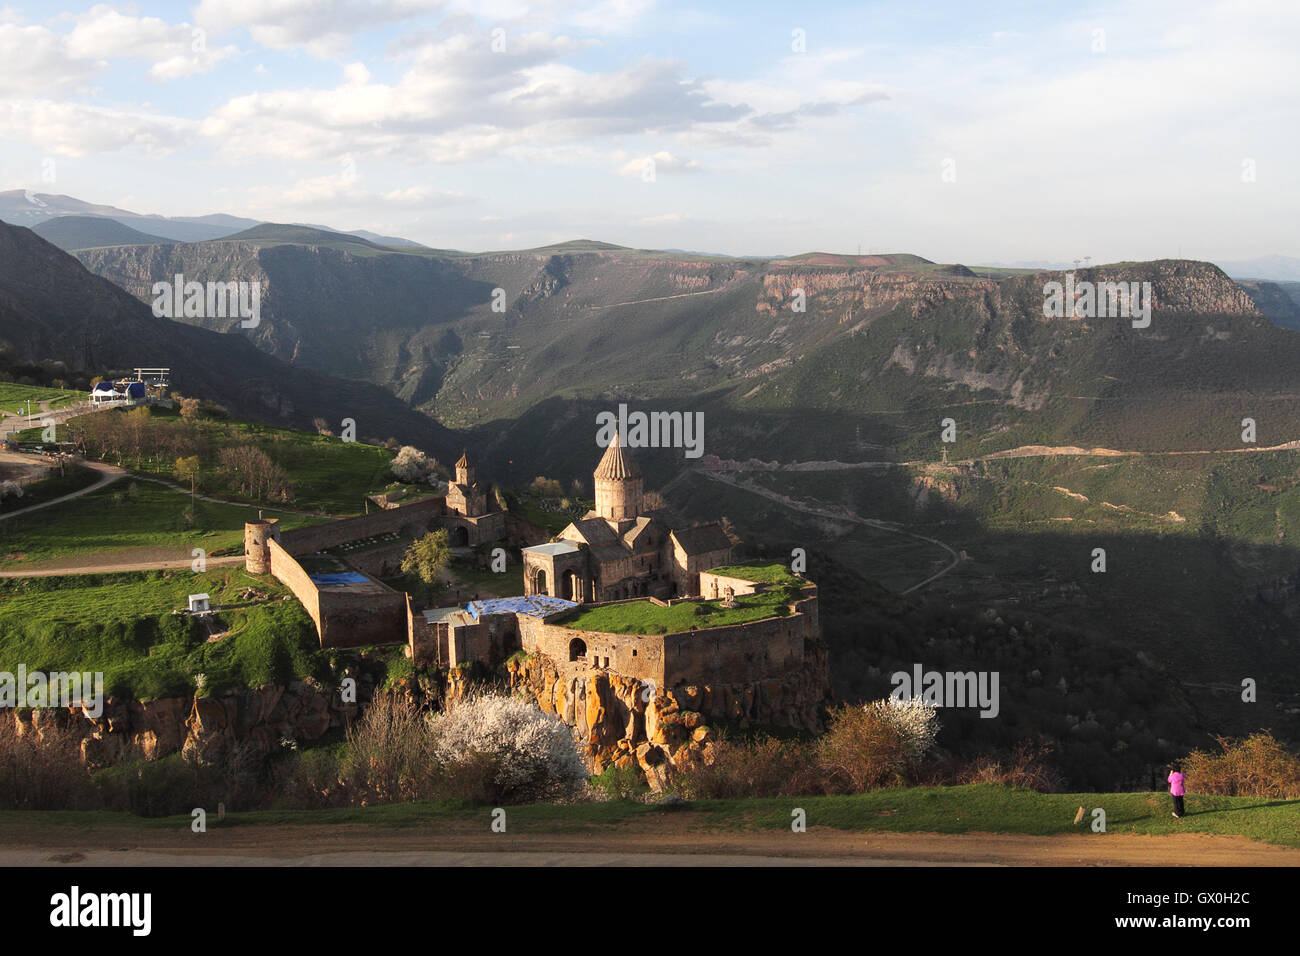 Femme en violet photographier le monastère de Tatev en Arménie. Banque D'Images